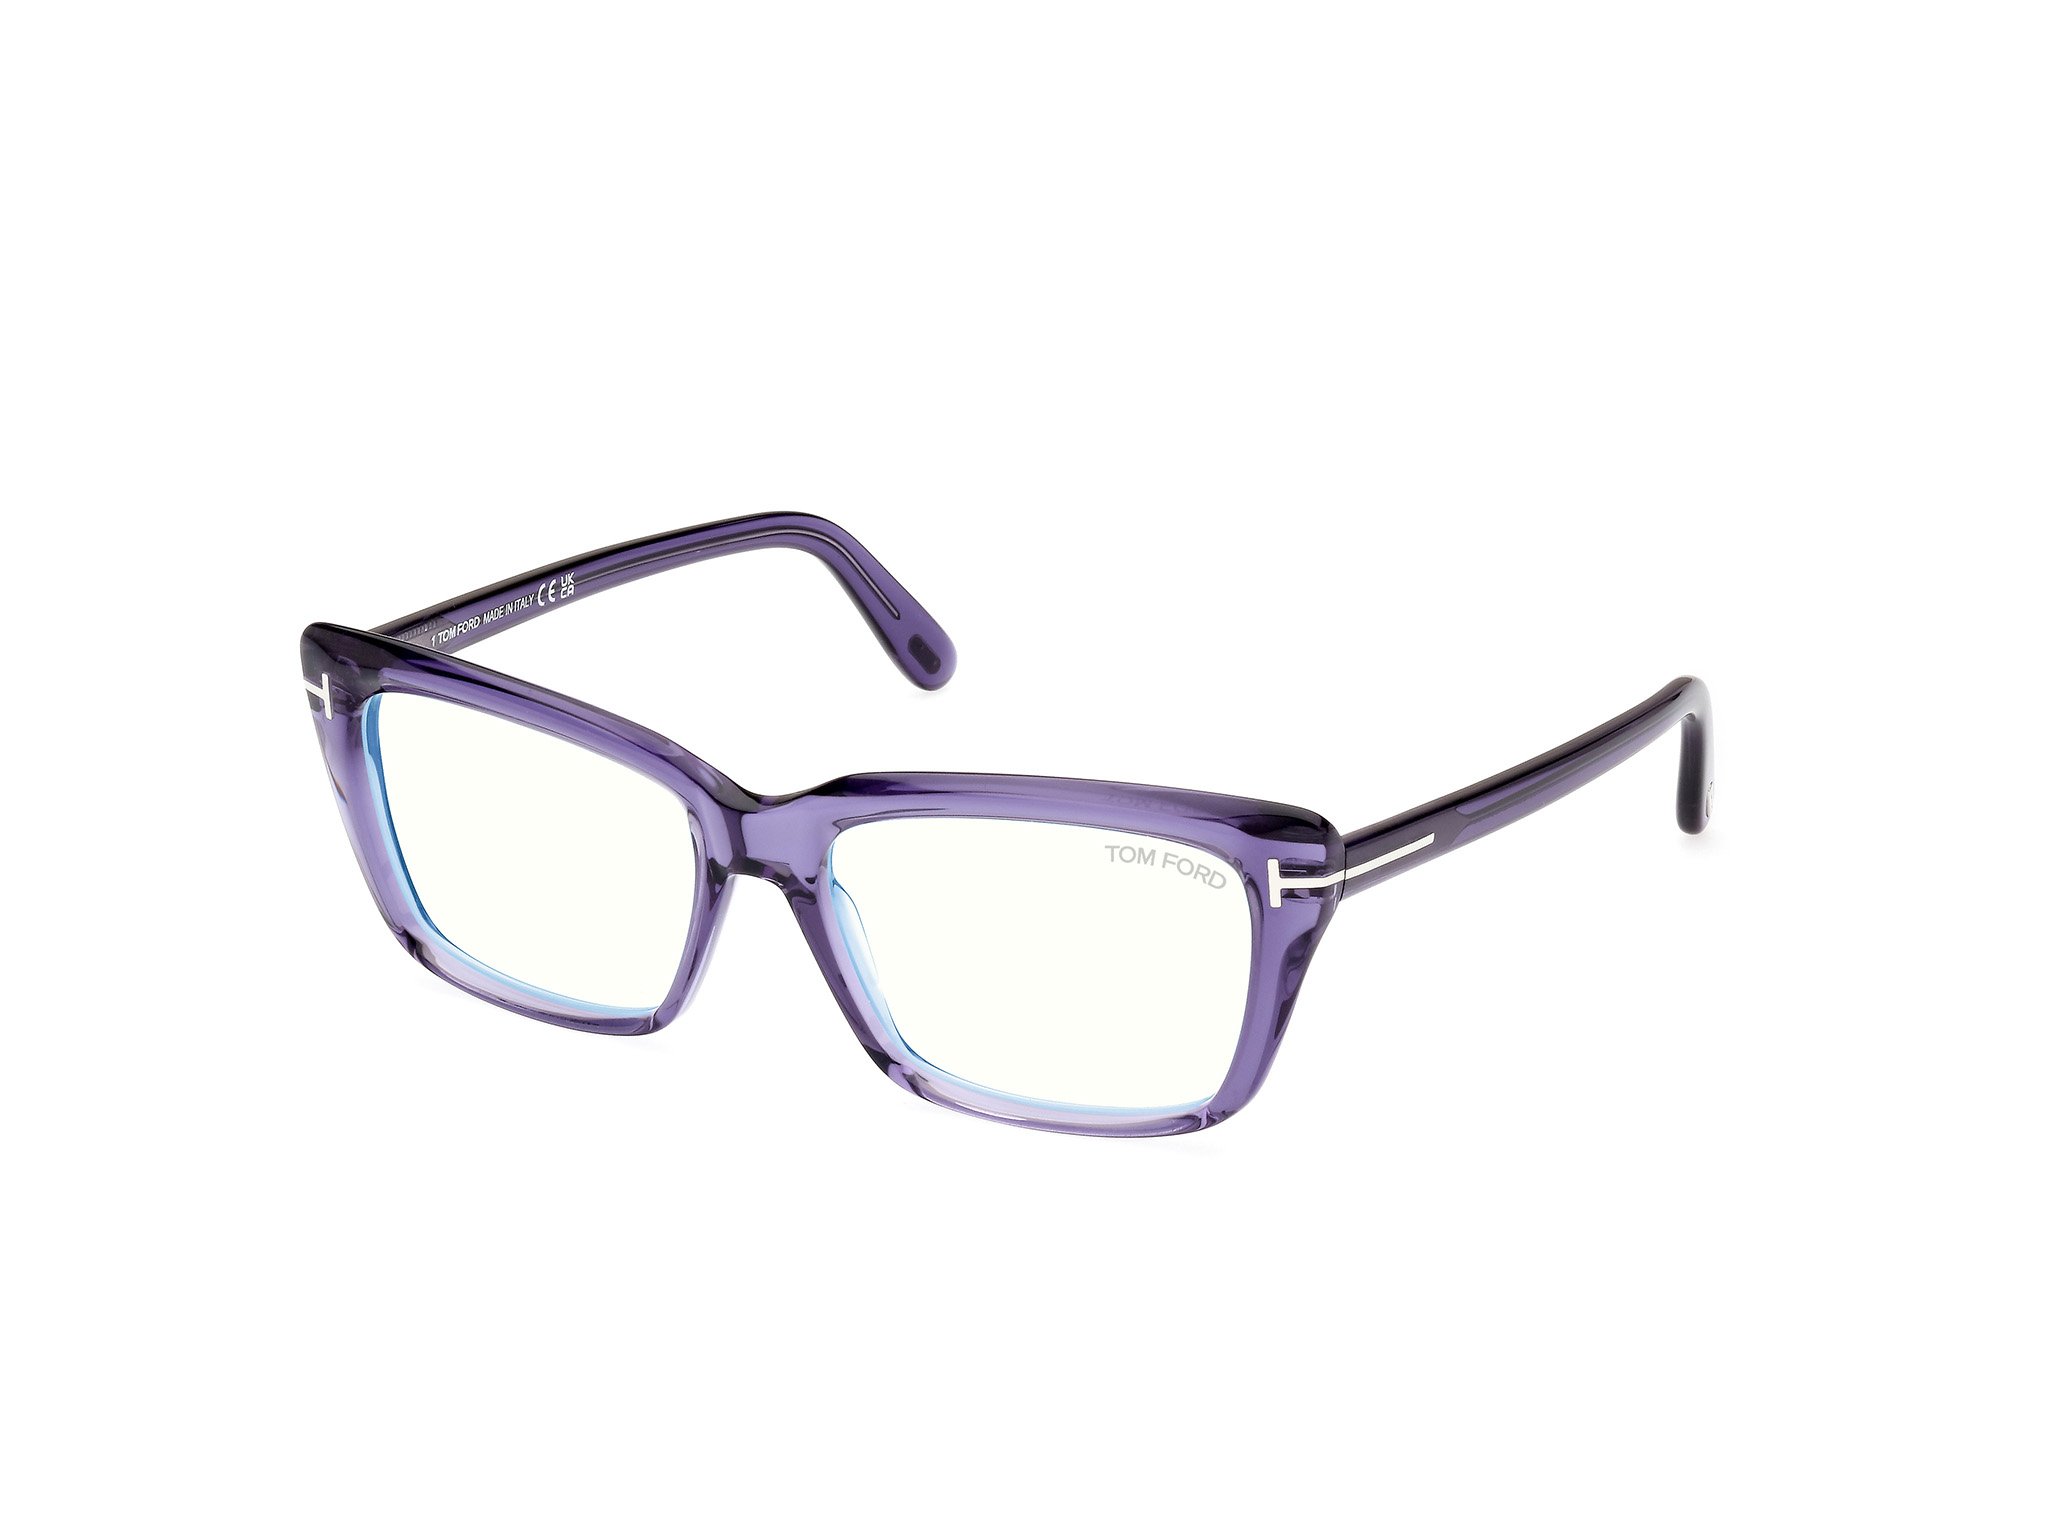 Das Bild zeigt die Korrektionsbrille FT5894-B 081 von der Marke Tom Ford in violett.